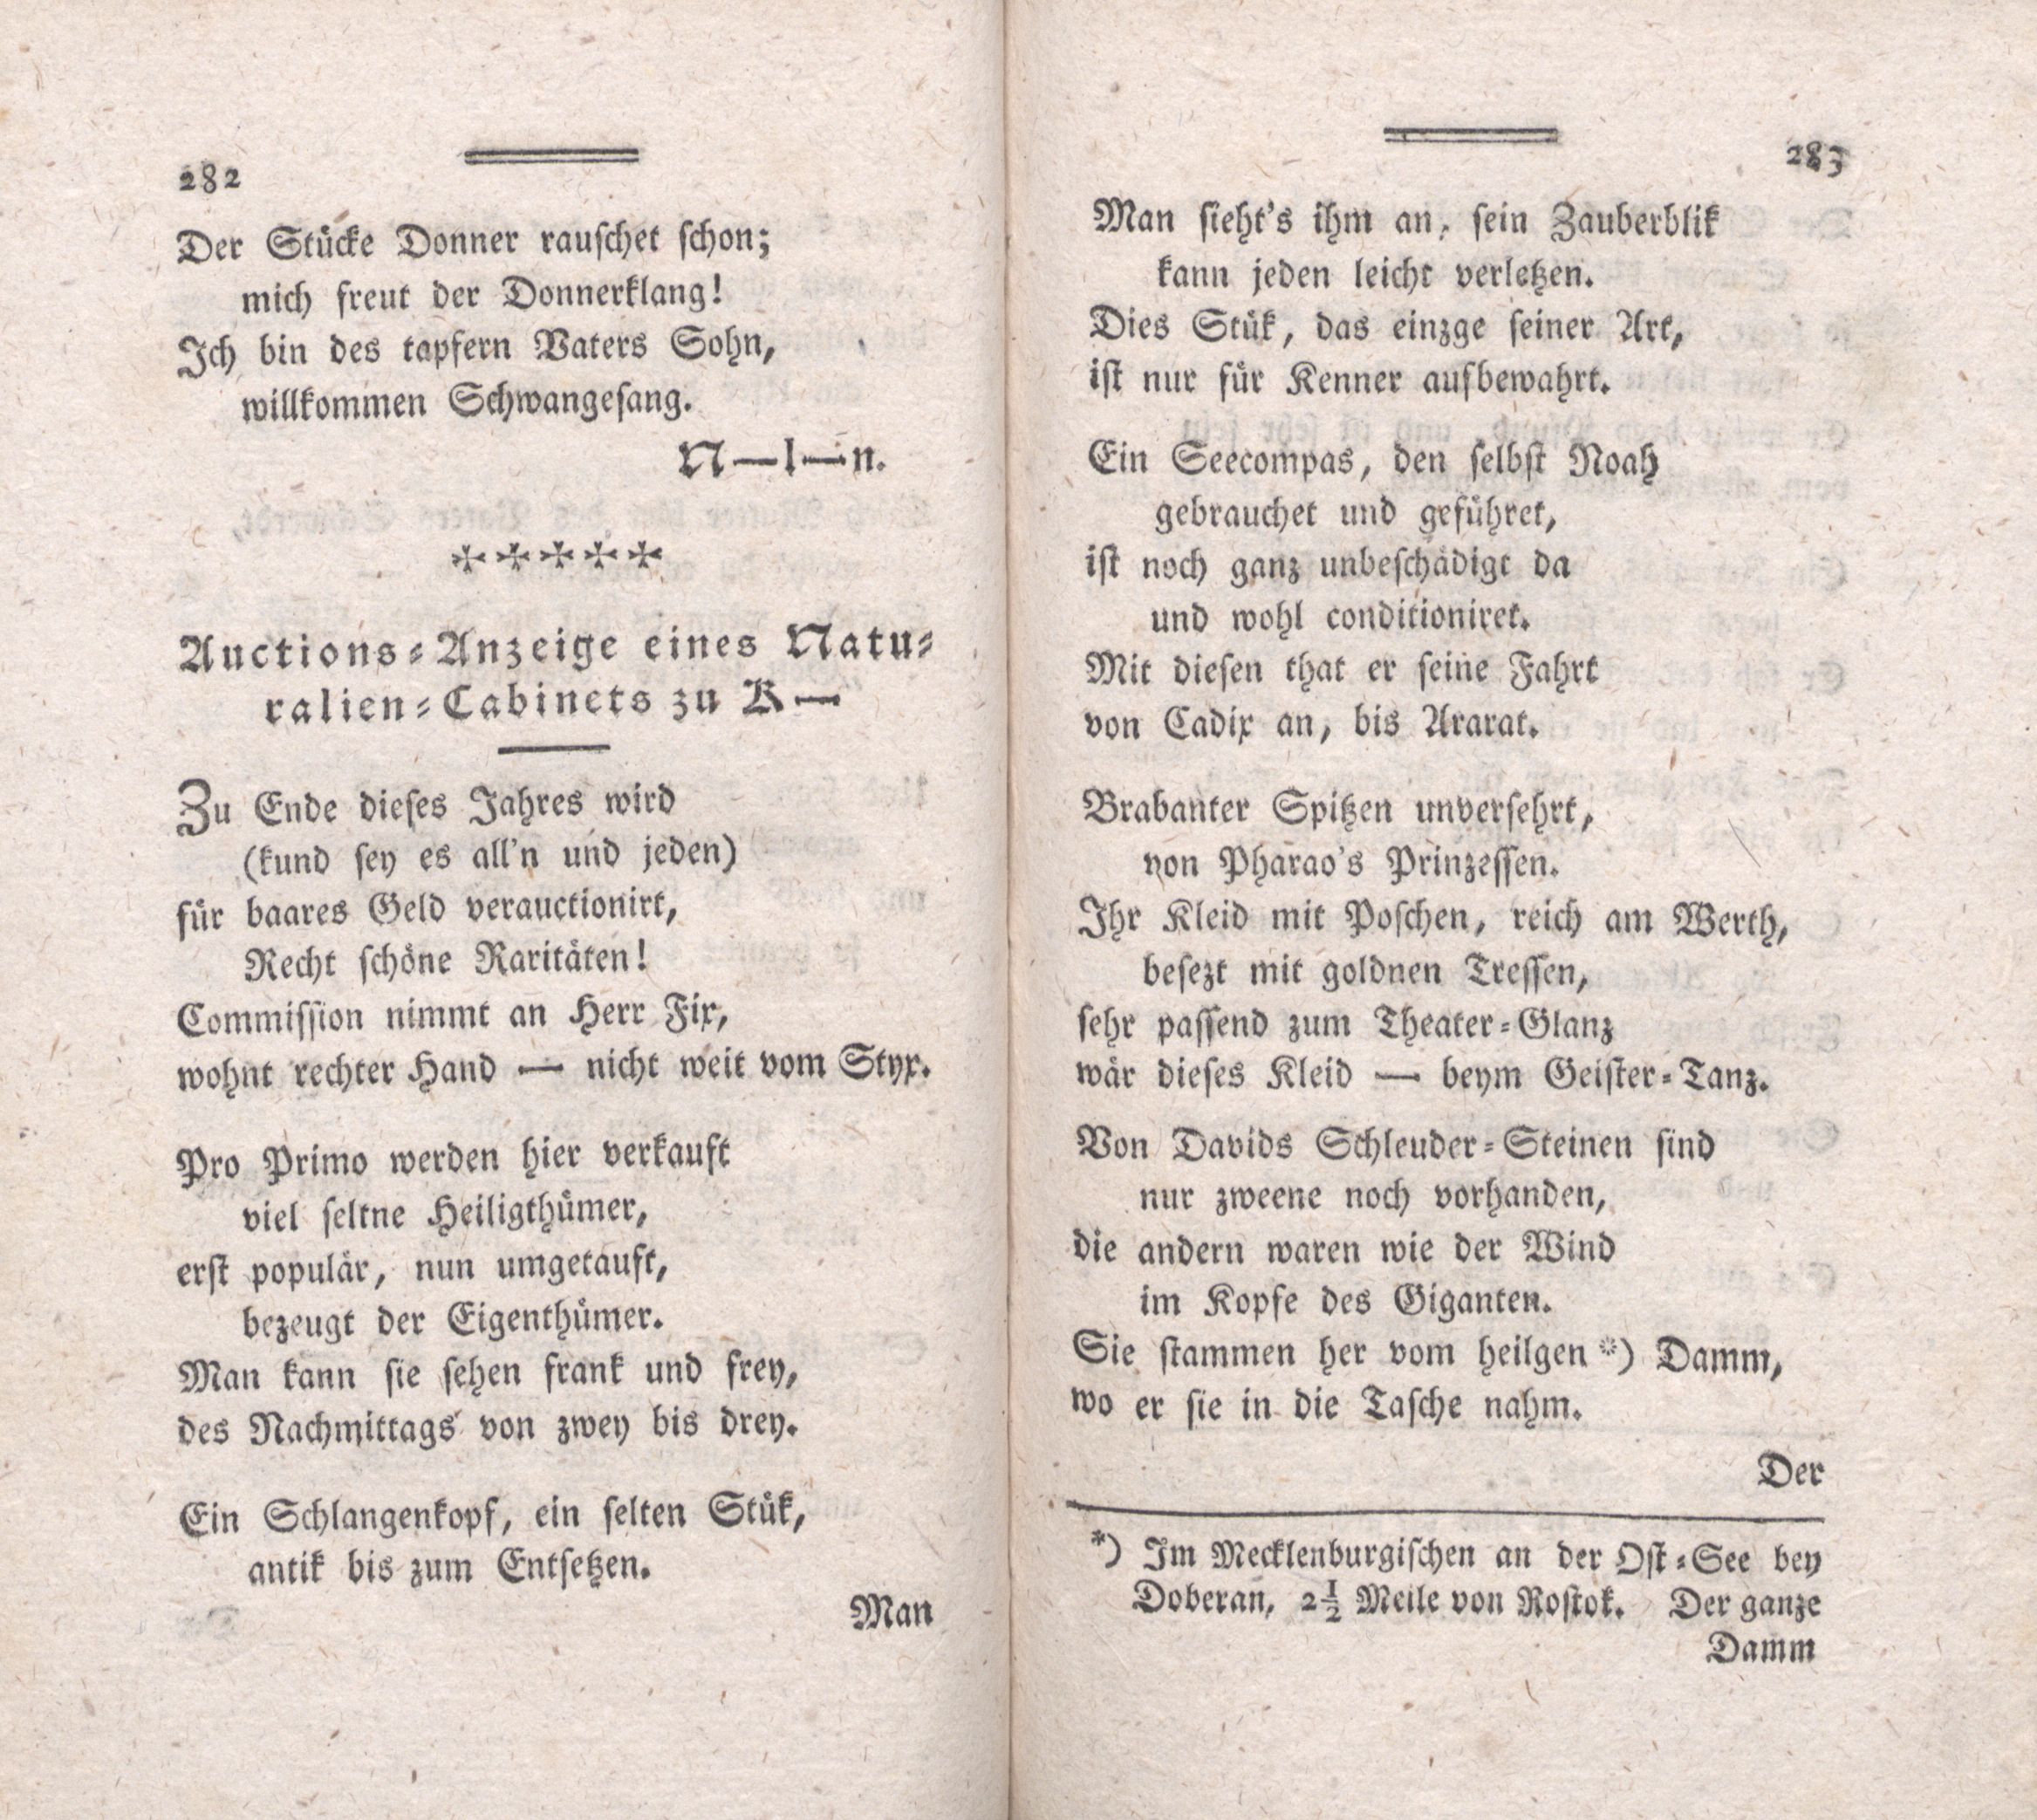 Auctions-Anzeige eines Naturalien-Cabinets zu K- (1787) | 1. (282-283) Haupttext